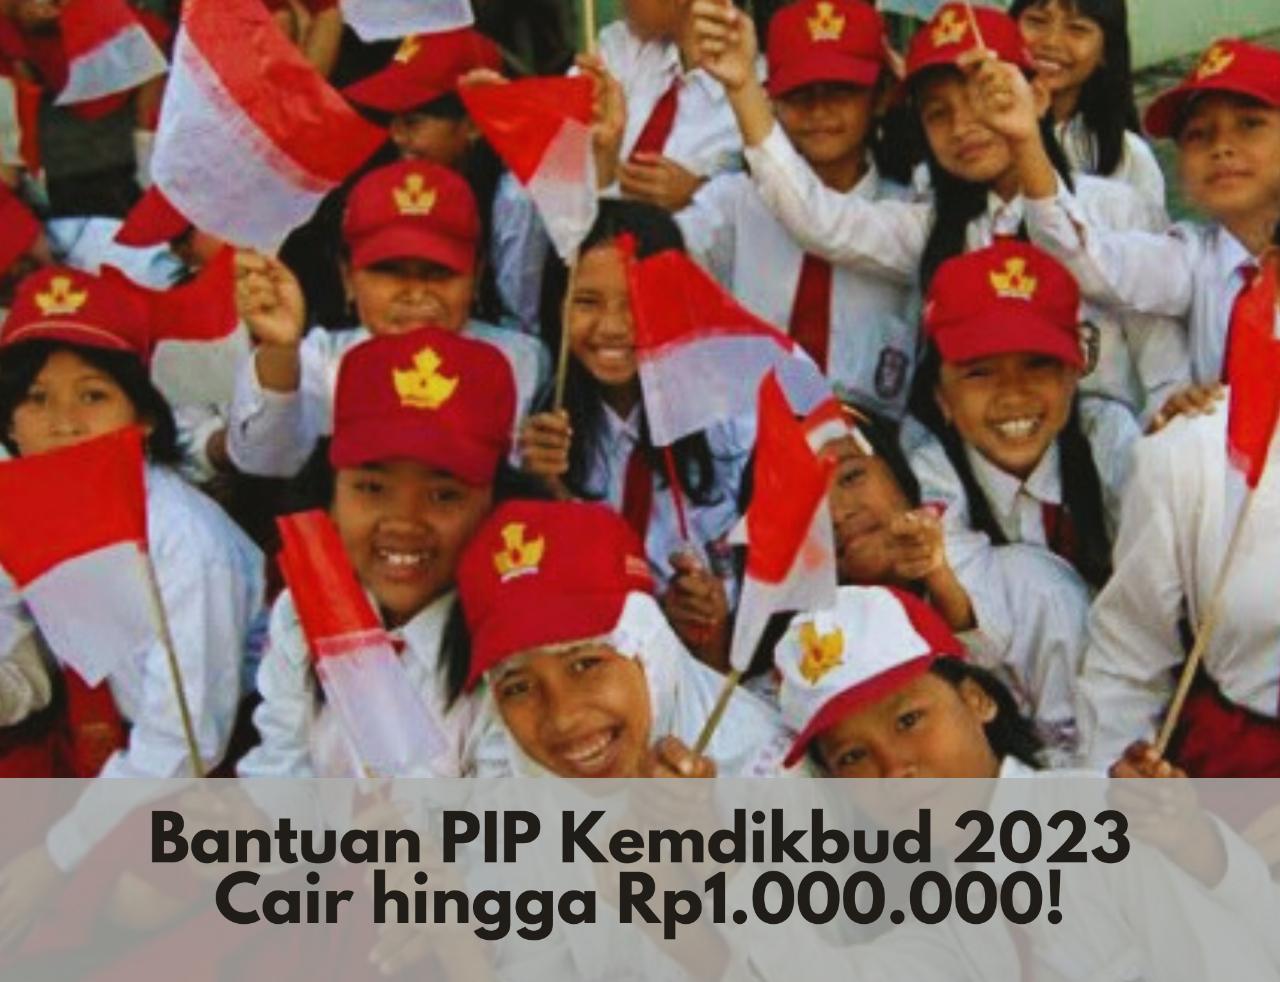 Cek Sekarang! Bantuan PIP Kemdikbud 2023 Cair hingga Rp1.000.000, Login Melalui pip.kemdikbud.go.id